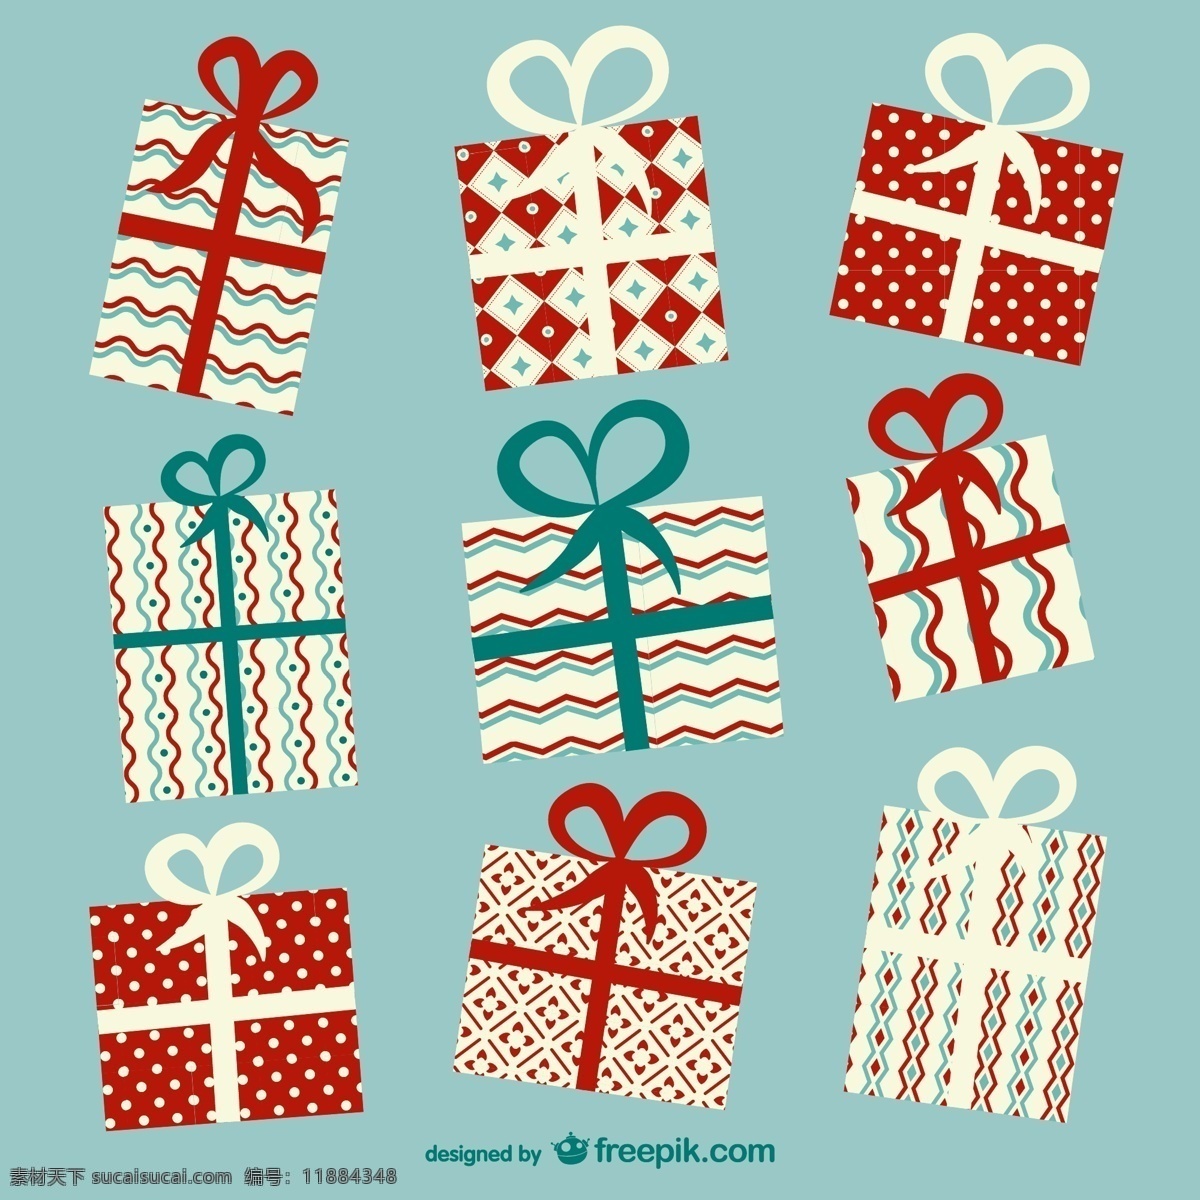 童趣 礼盒 蝴蝶结 礼包 礼物 矢量图 丝带 条纹 水玉点 节日素材 圣诞节